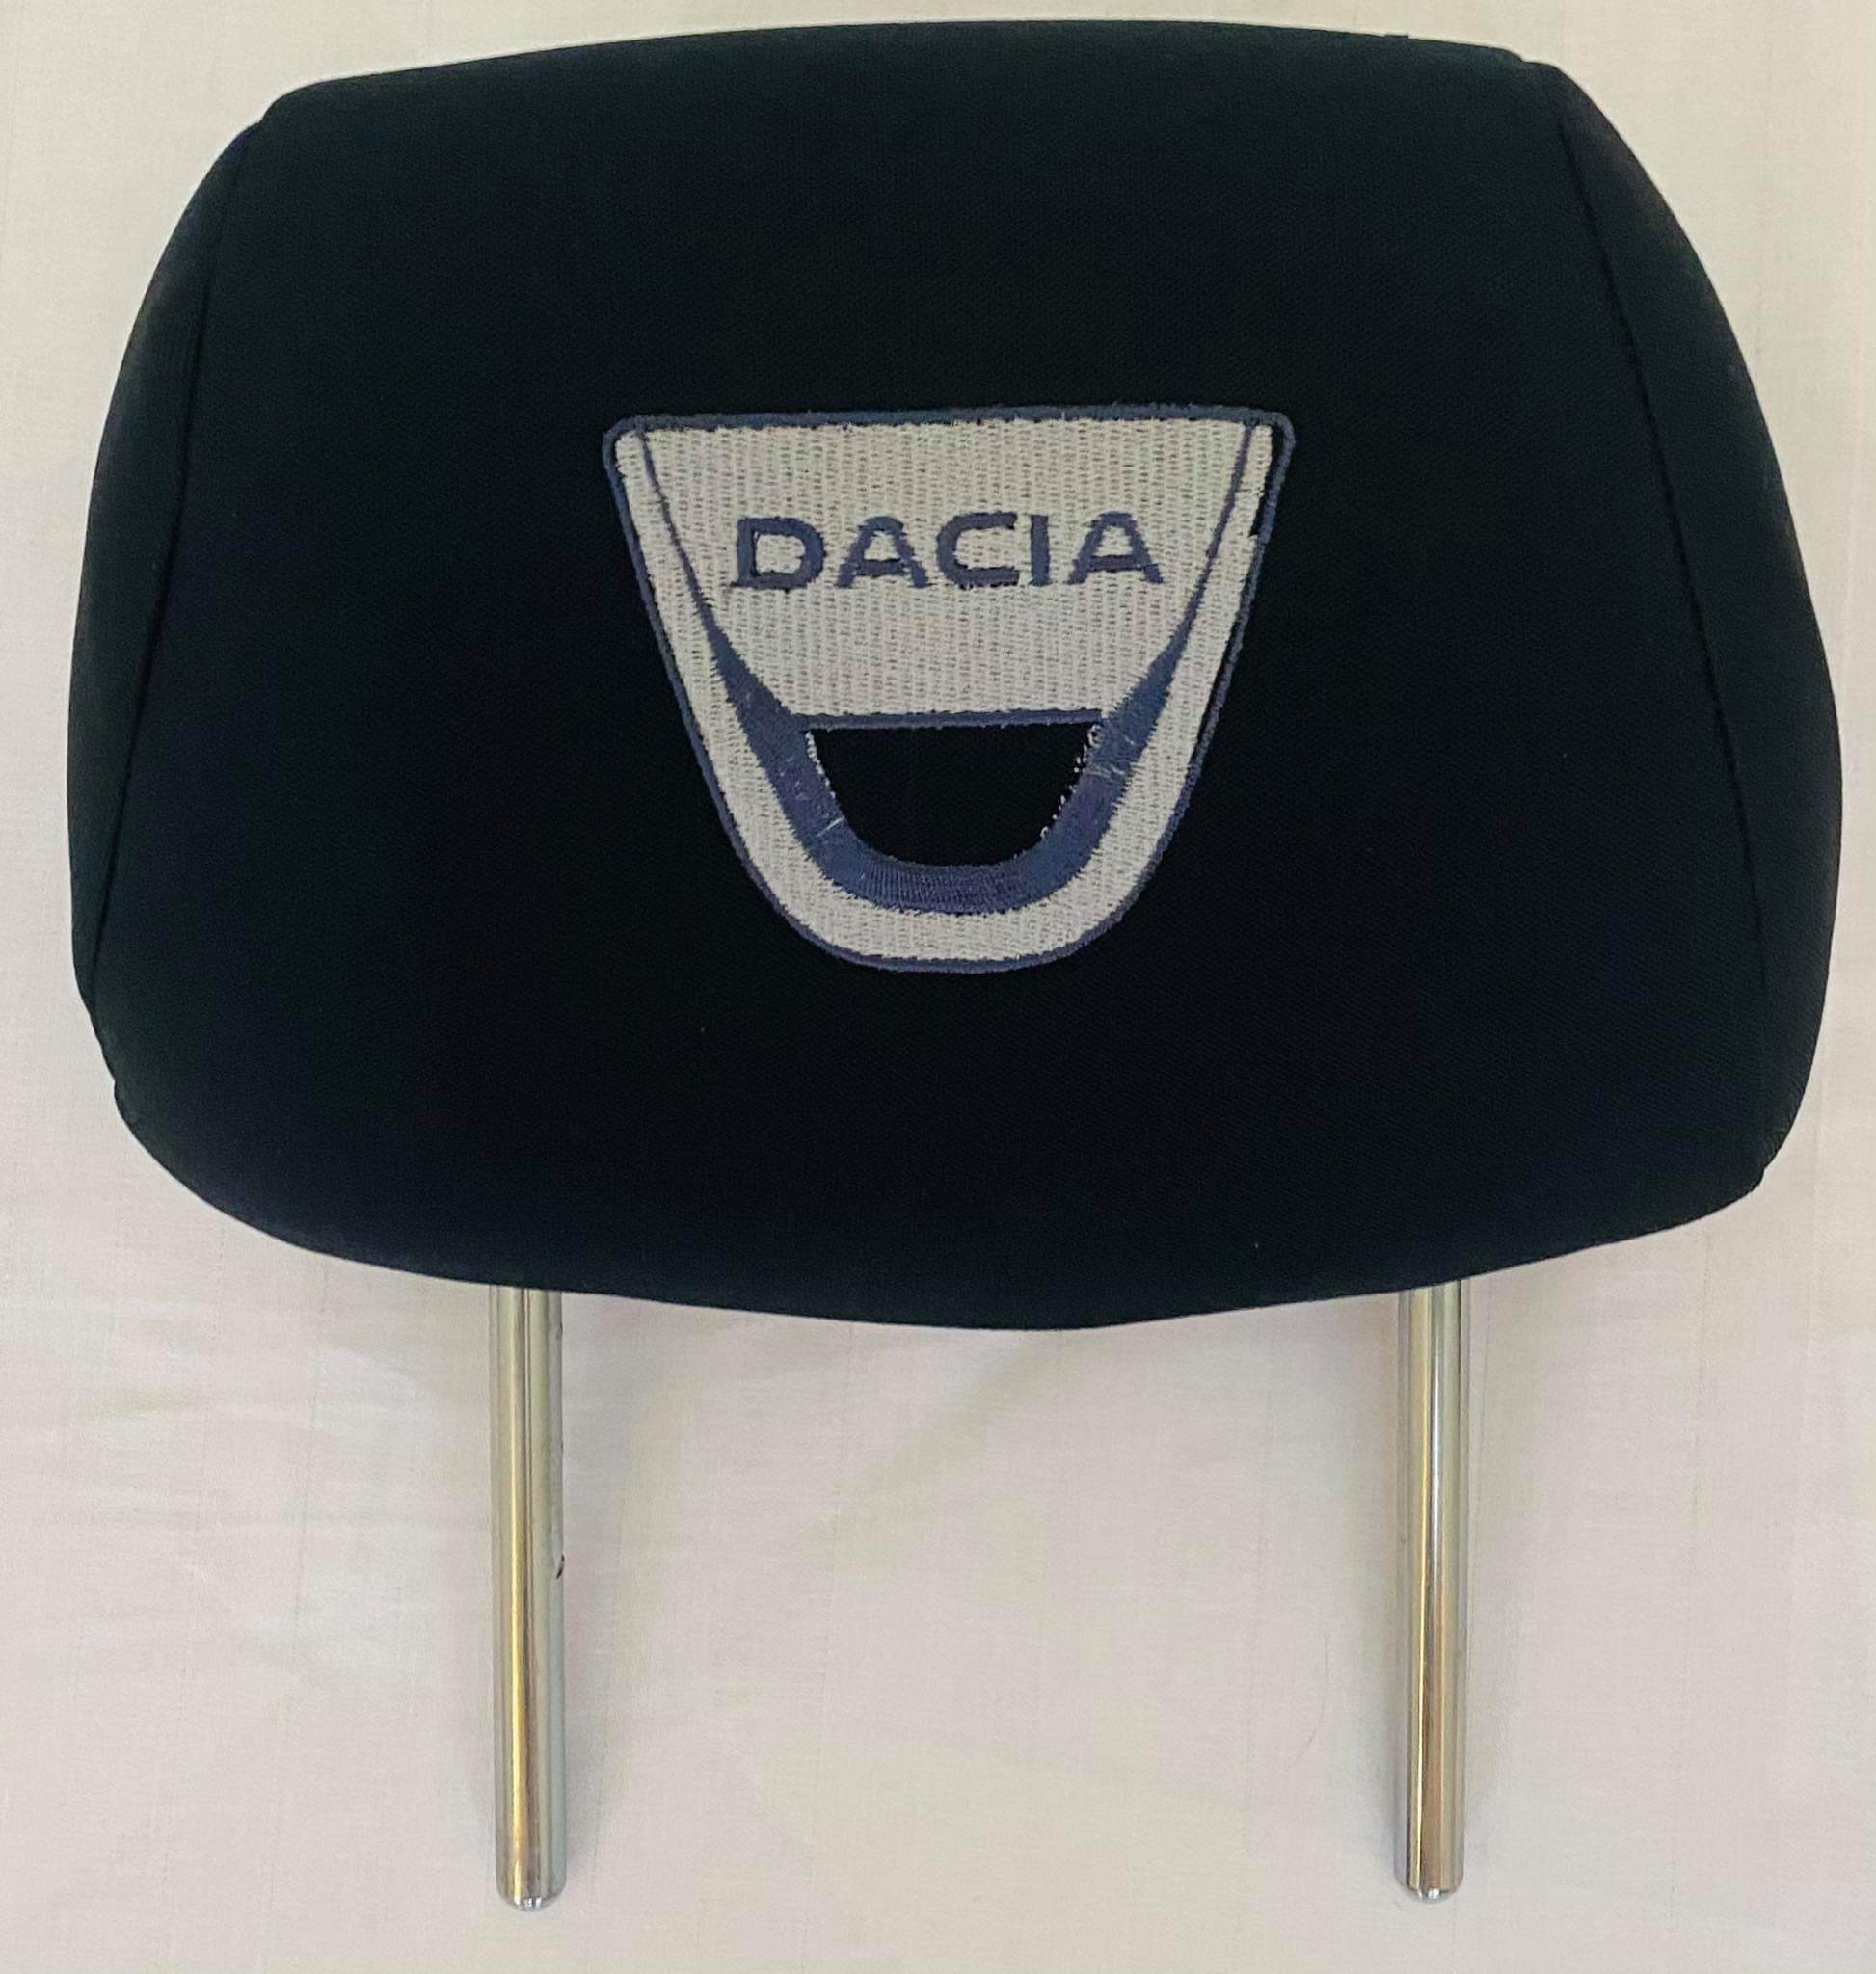 Čierne návleky na opierky hlavy s logom Dacia